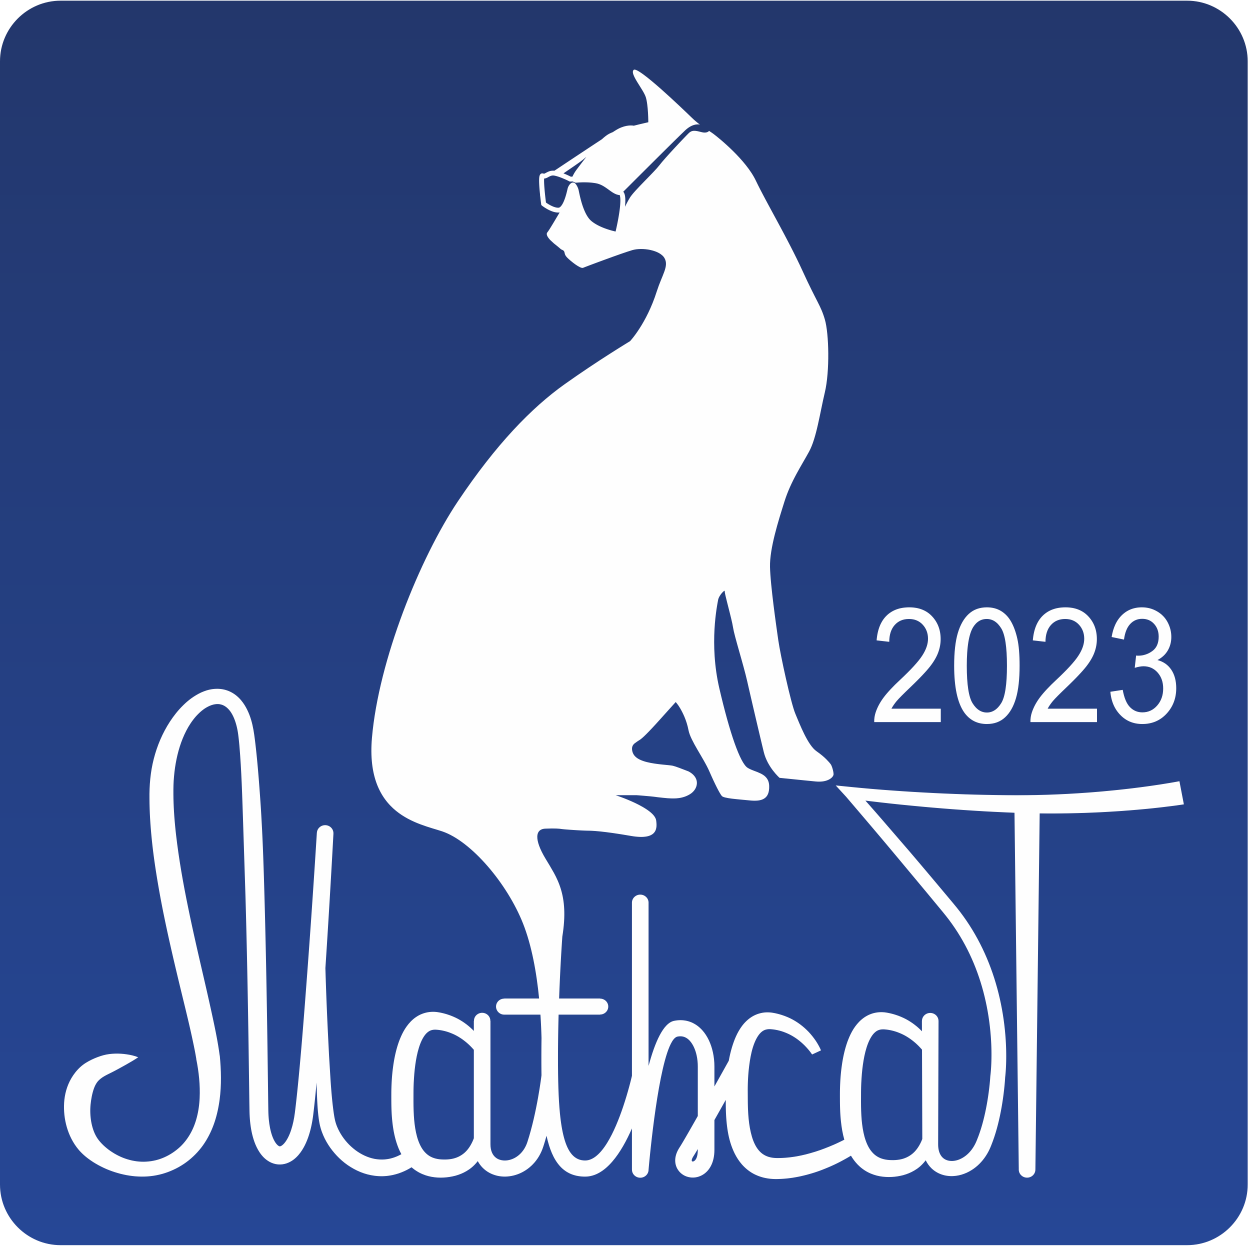 MathCat2023 